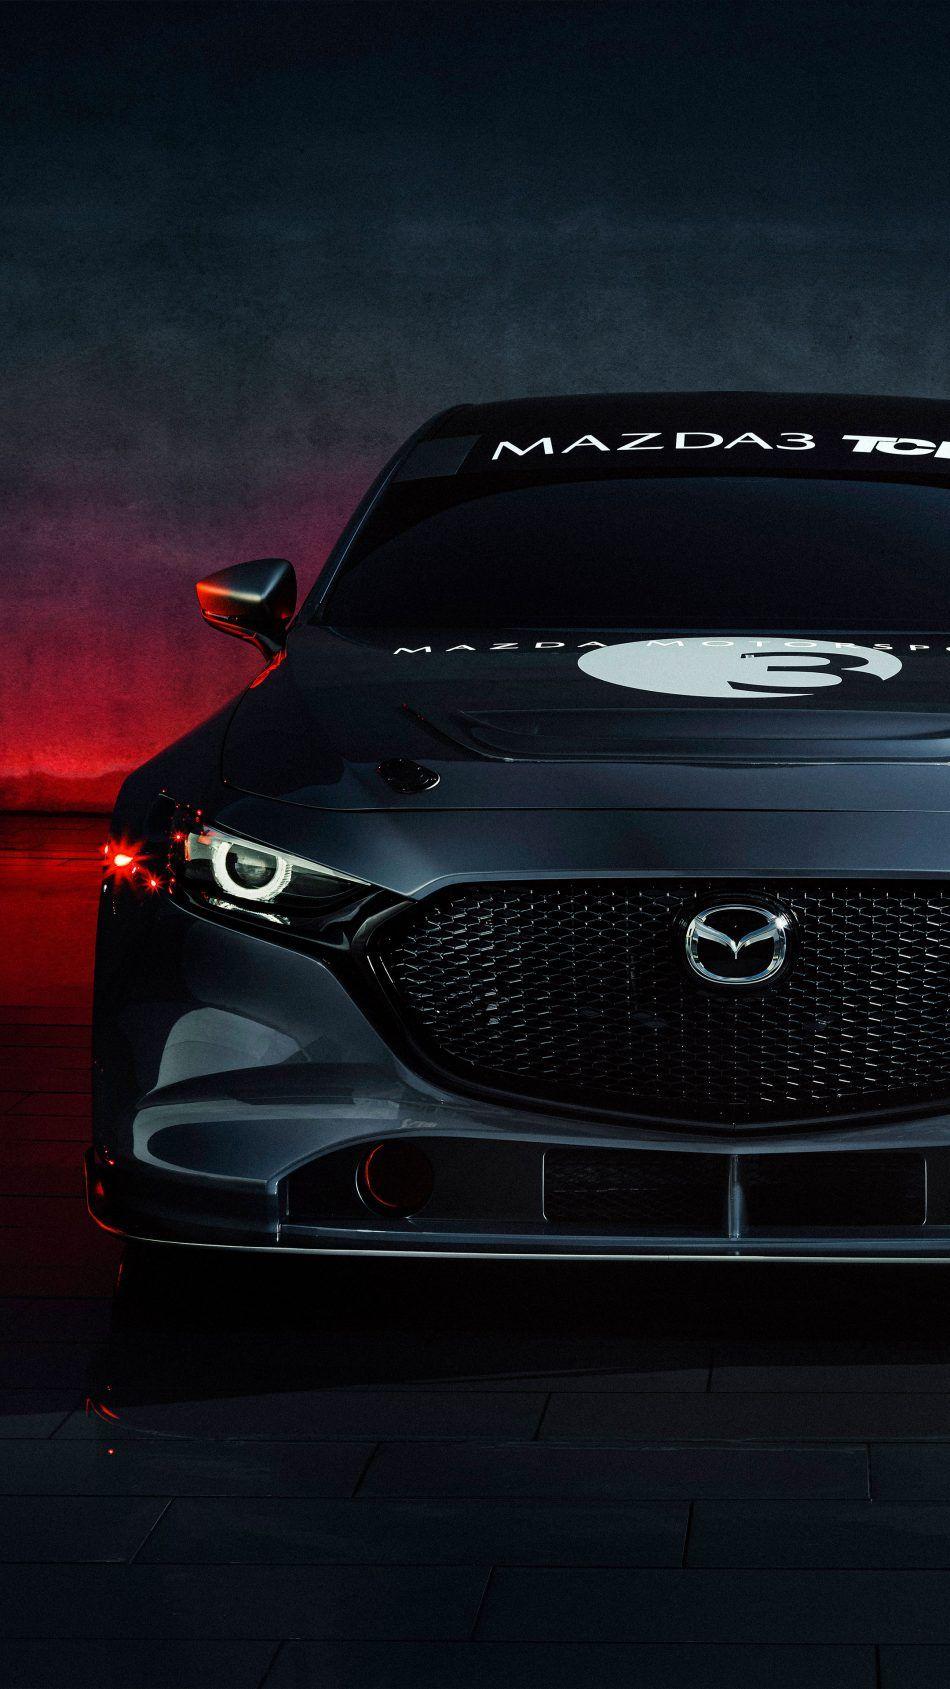 Mazda 3 TCR Race Car 2020. Mazda, Mazda Mazda 3 hatchback